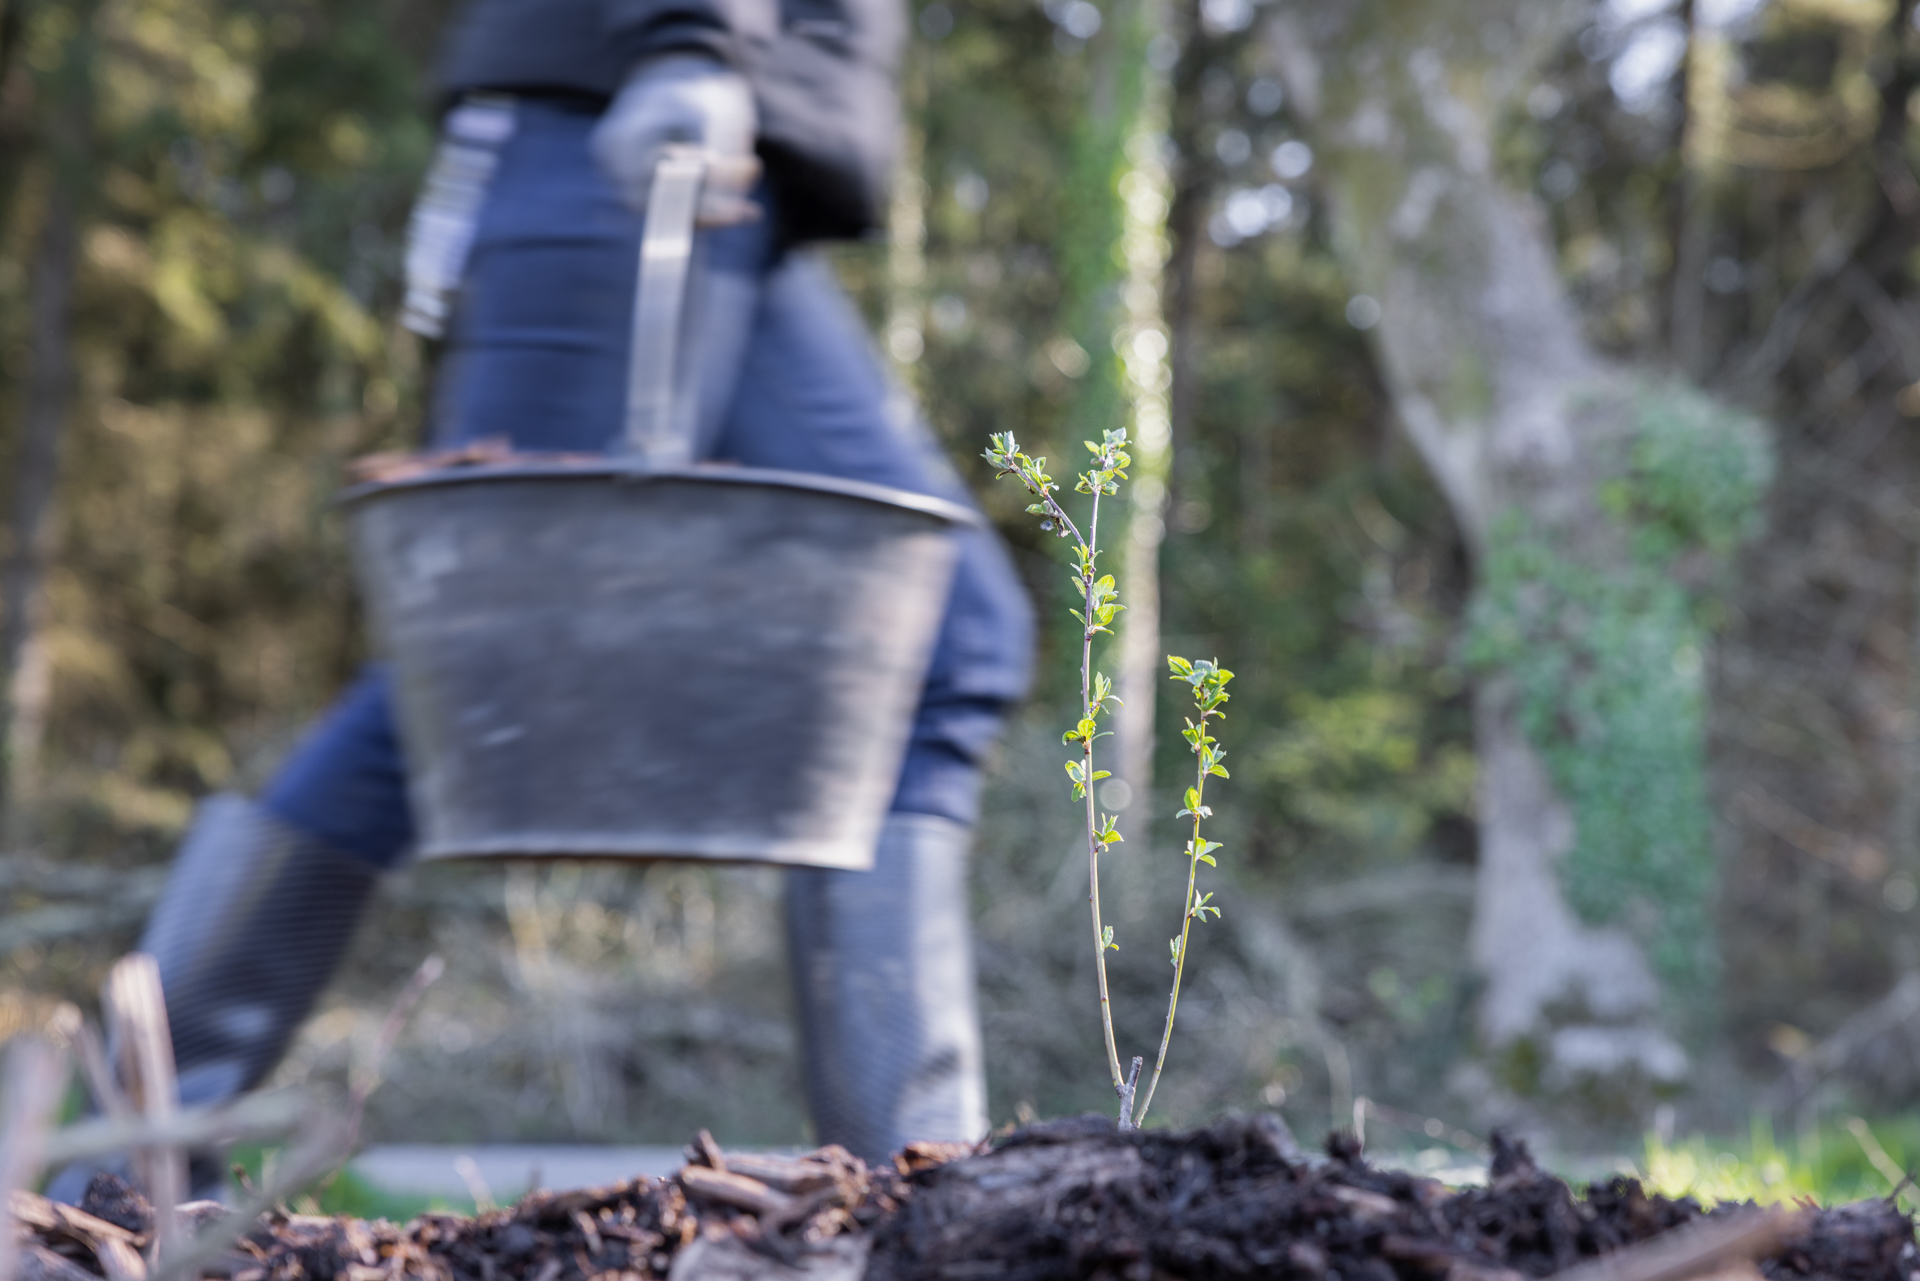 atelier de plantation d'arbres La Gacilly par la Fondation Yves Rocher mains dans la terre